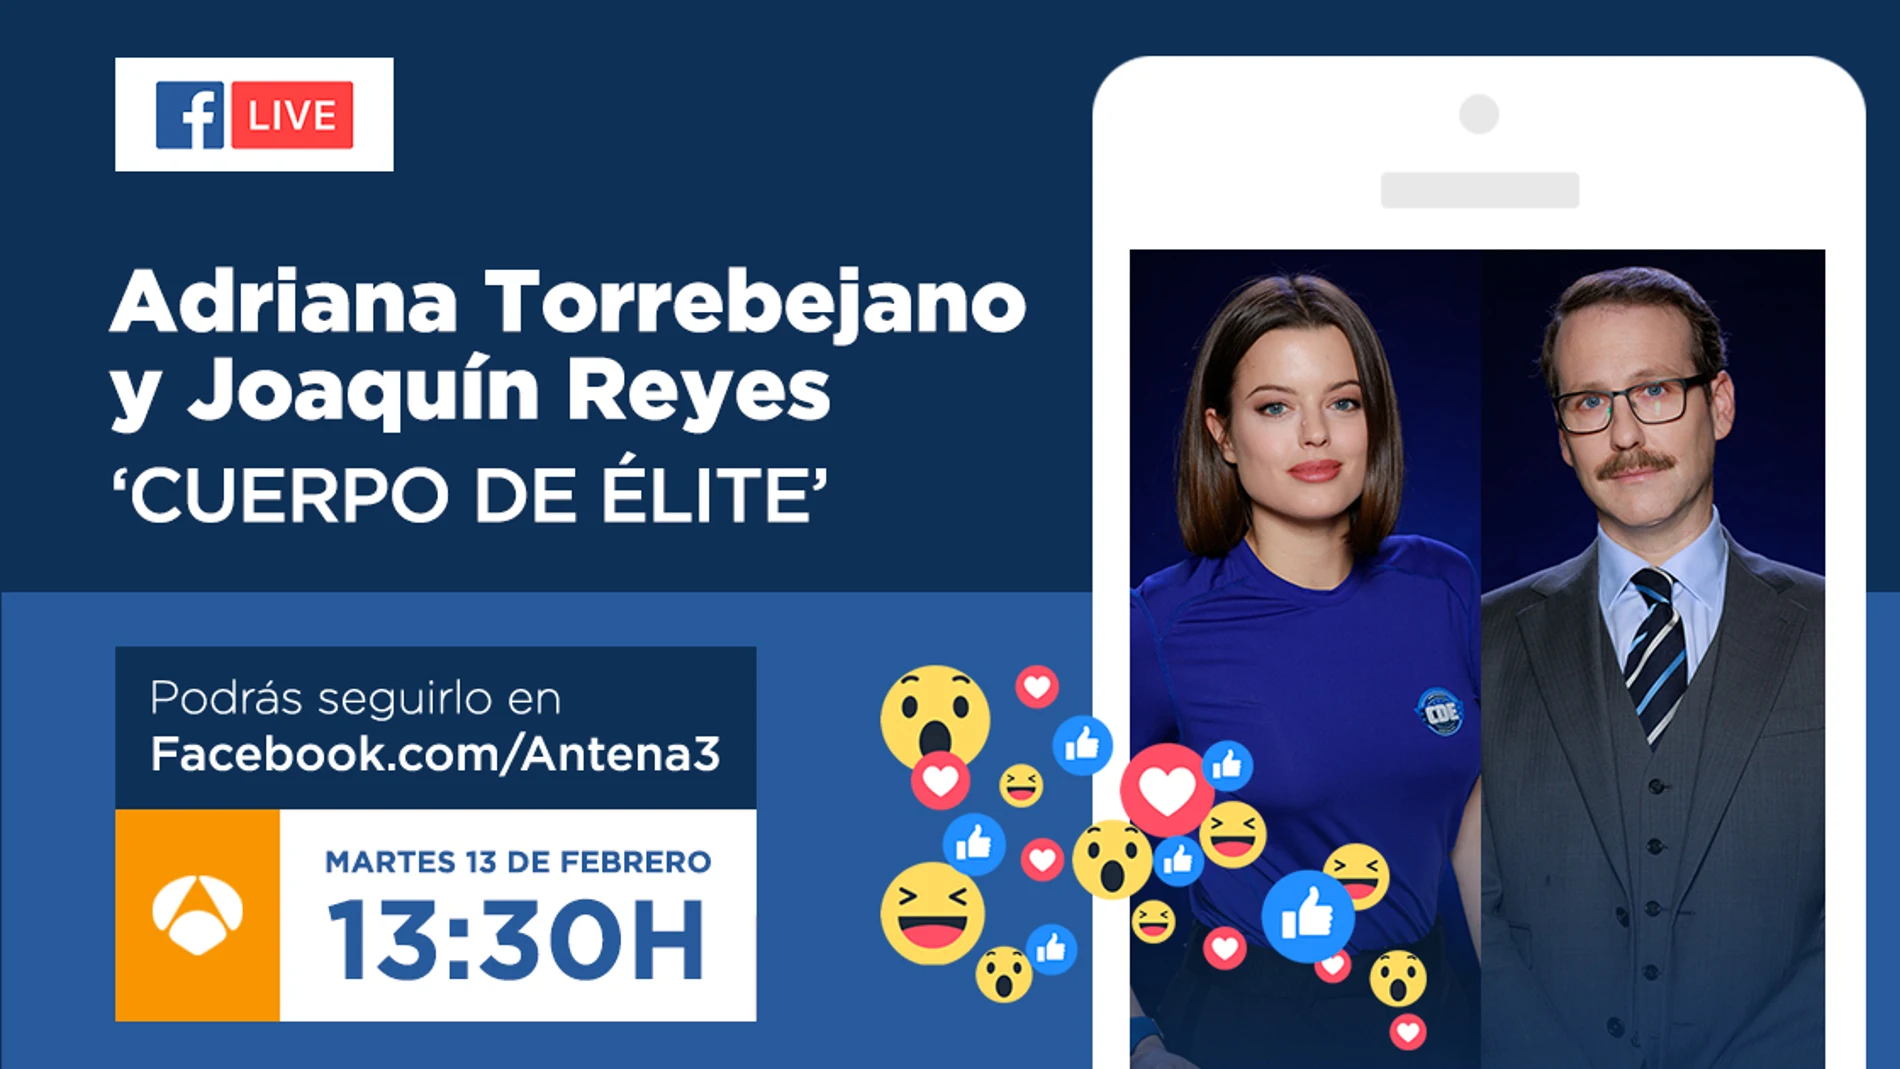 Adriana Torrebejano y Joaquín Reyes, este martes en directo con los seguidores de 'Cuerpo de Élite' en Facebook Live